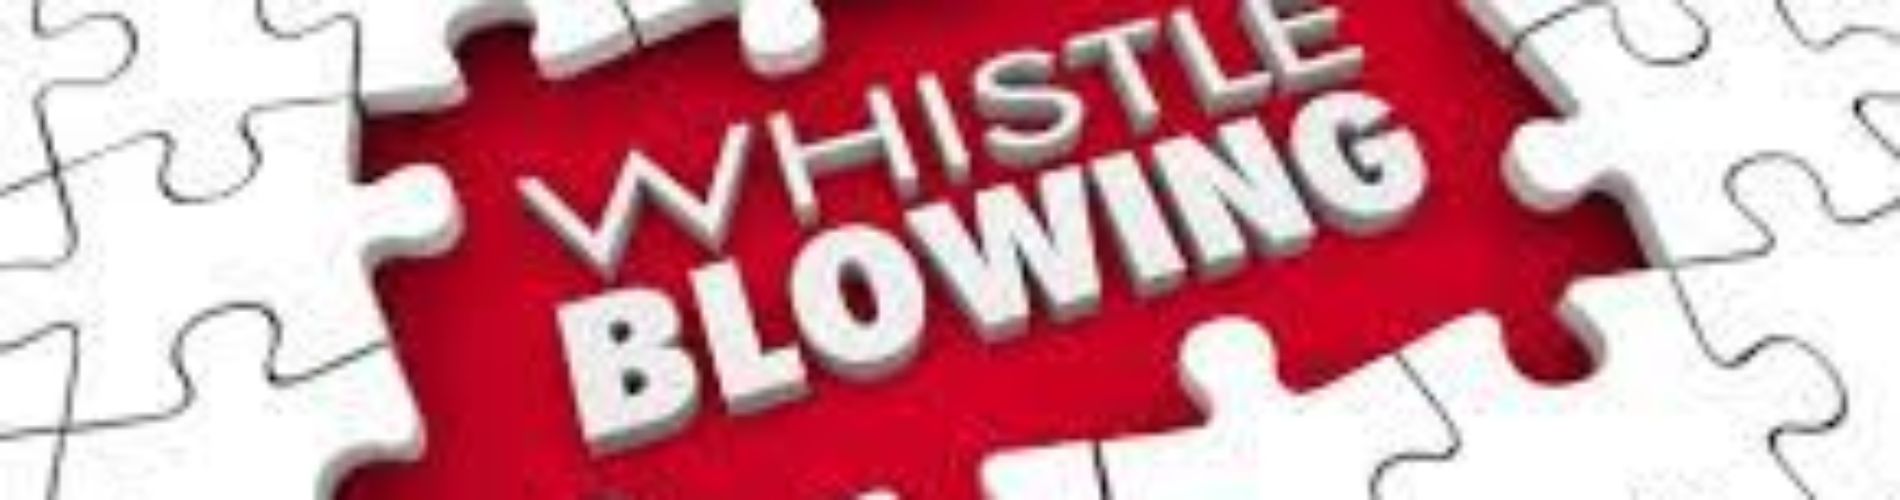 Whistleblowing (Segnalazioni condotte illecite)